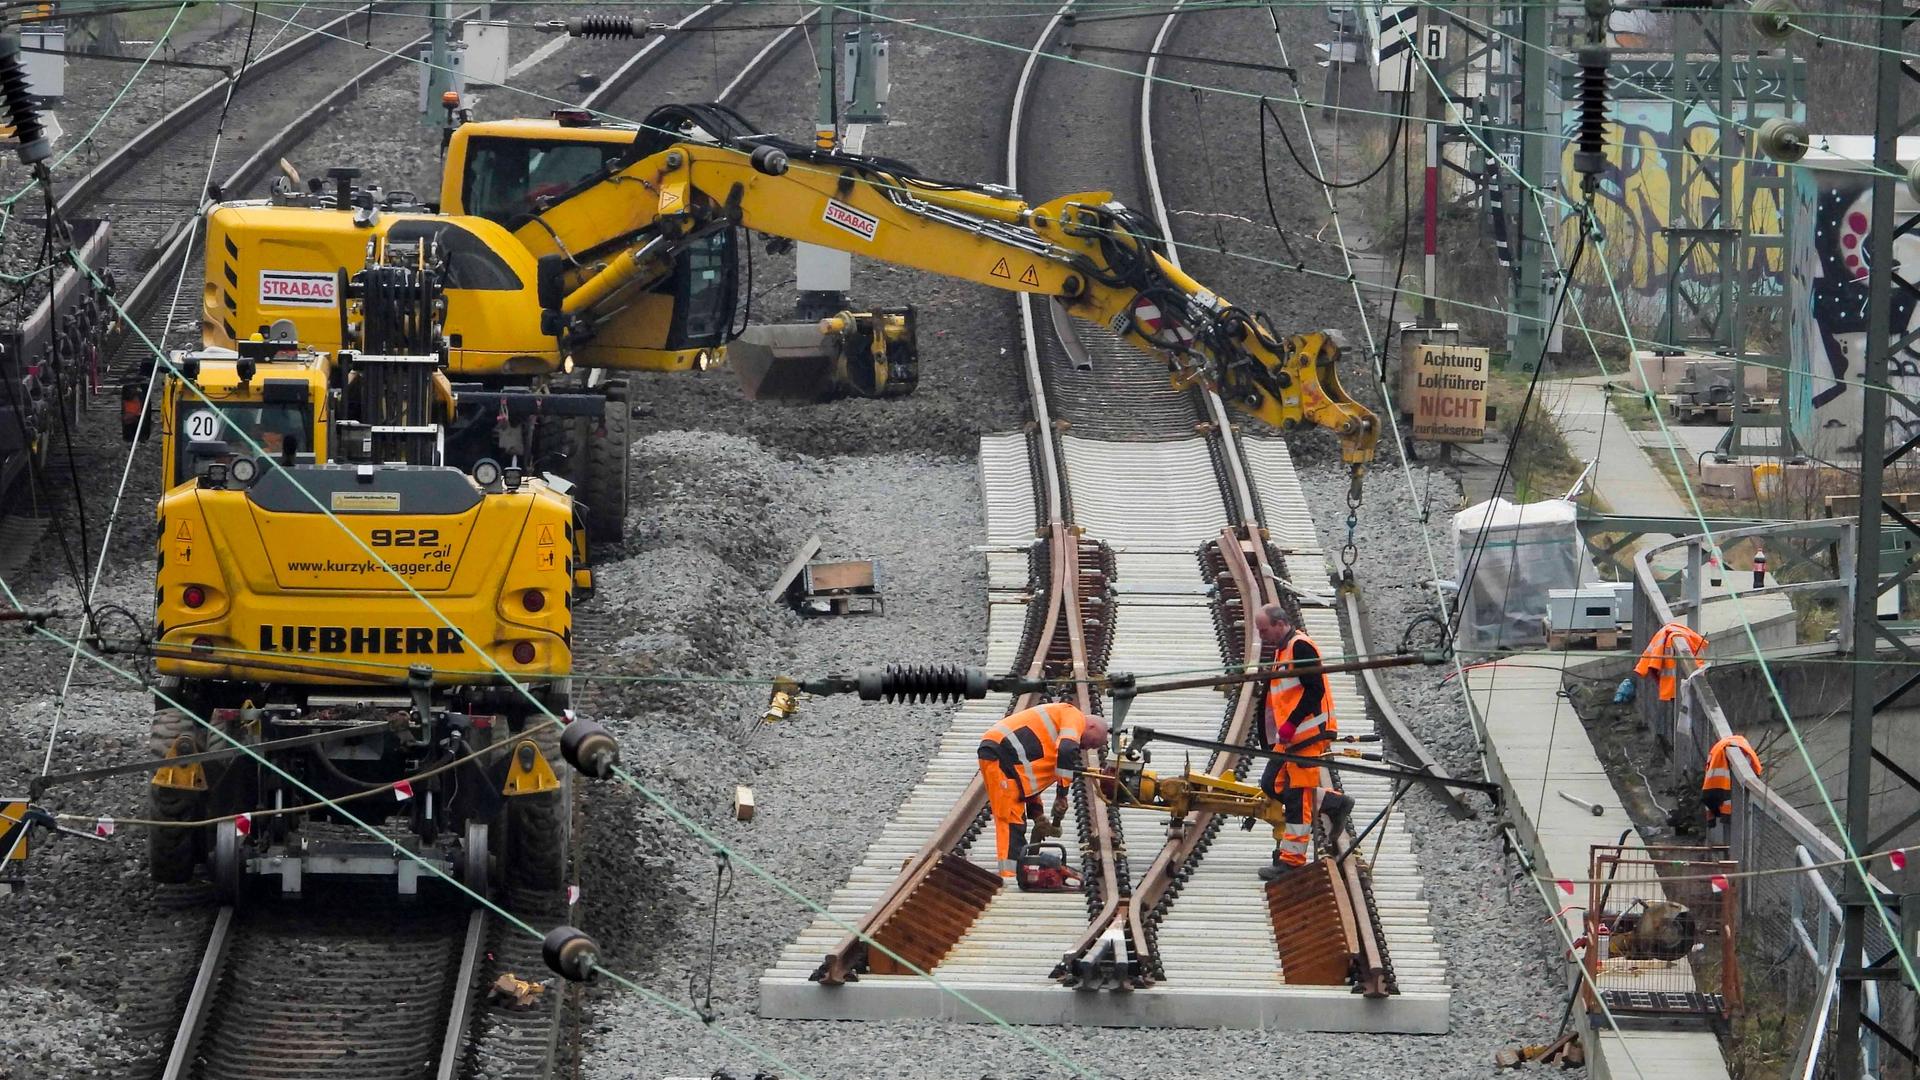 Auf einer Schiene der Deutschen Bahn laufen Sanierungsarbeiten - zu sehen ist ein Bagger und mehrere Bauarbeiter, die an den Gleisen arbeiten.